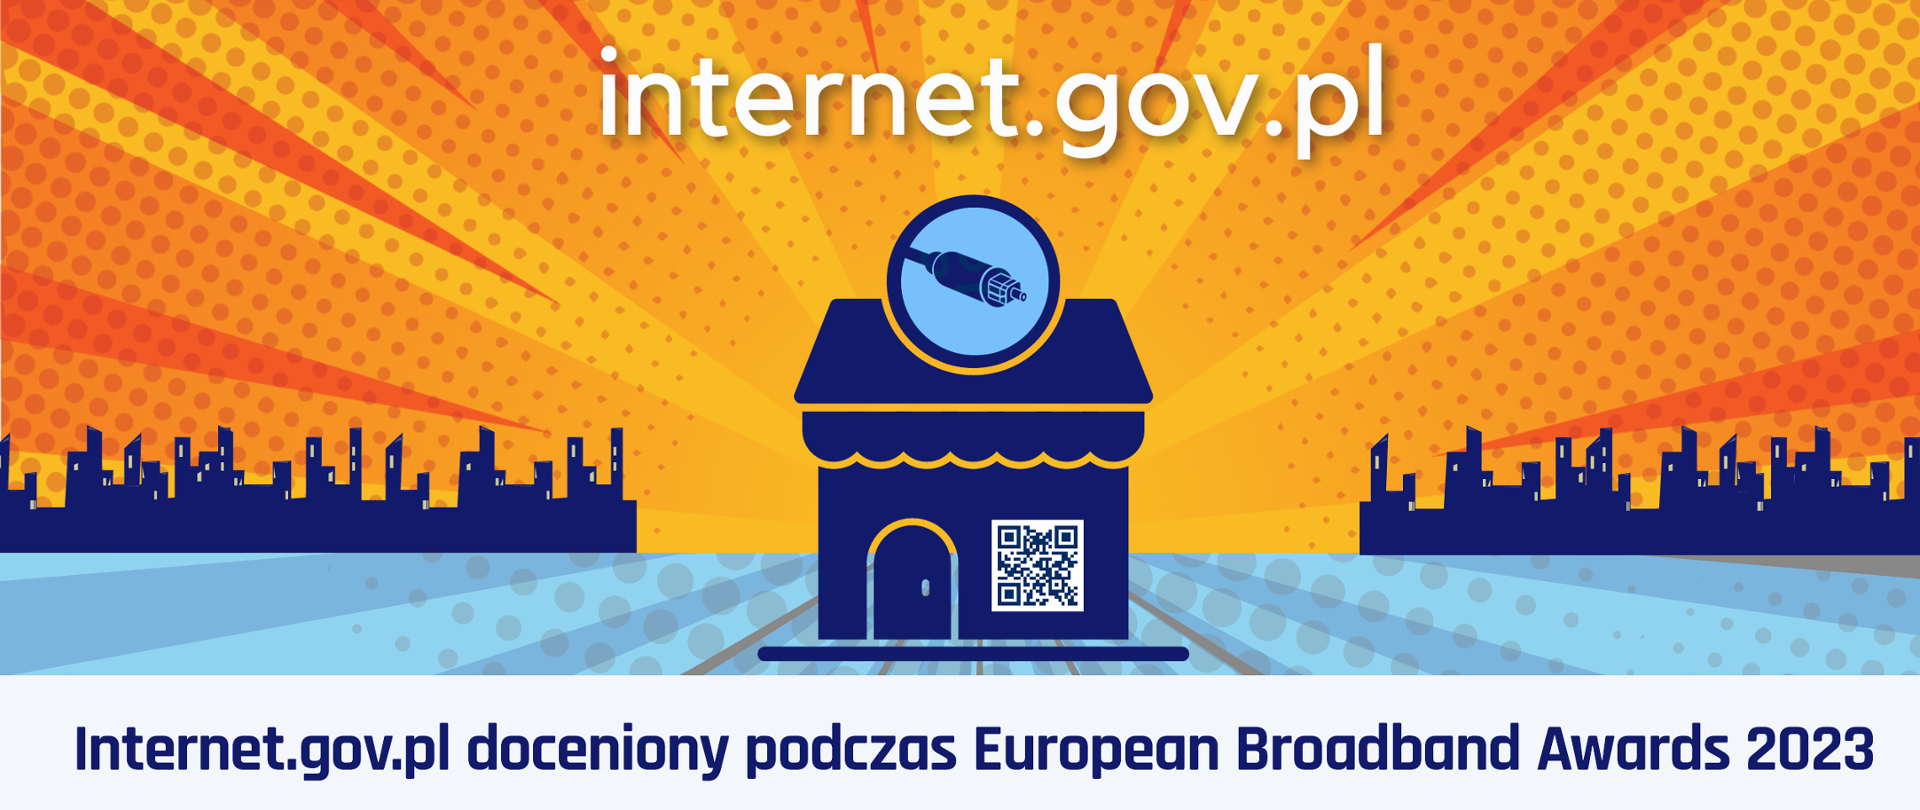 Internet.gov.pl doceniony 